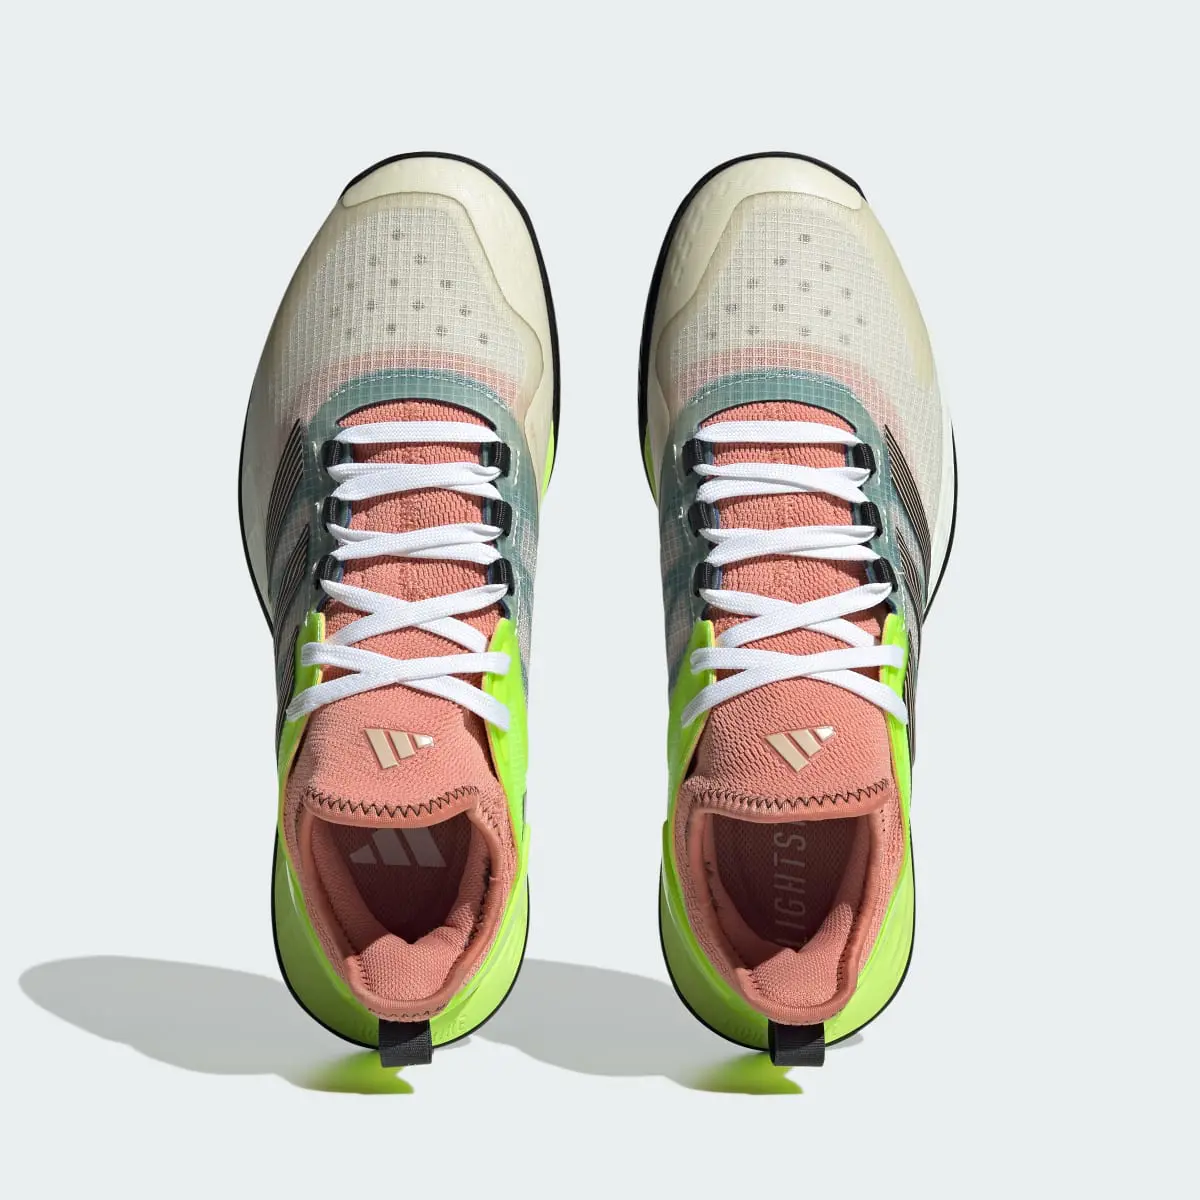 Adidas Adizero Ubersonic 4.1 Tennis Shoes. 3